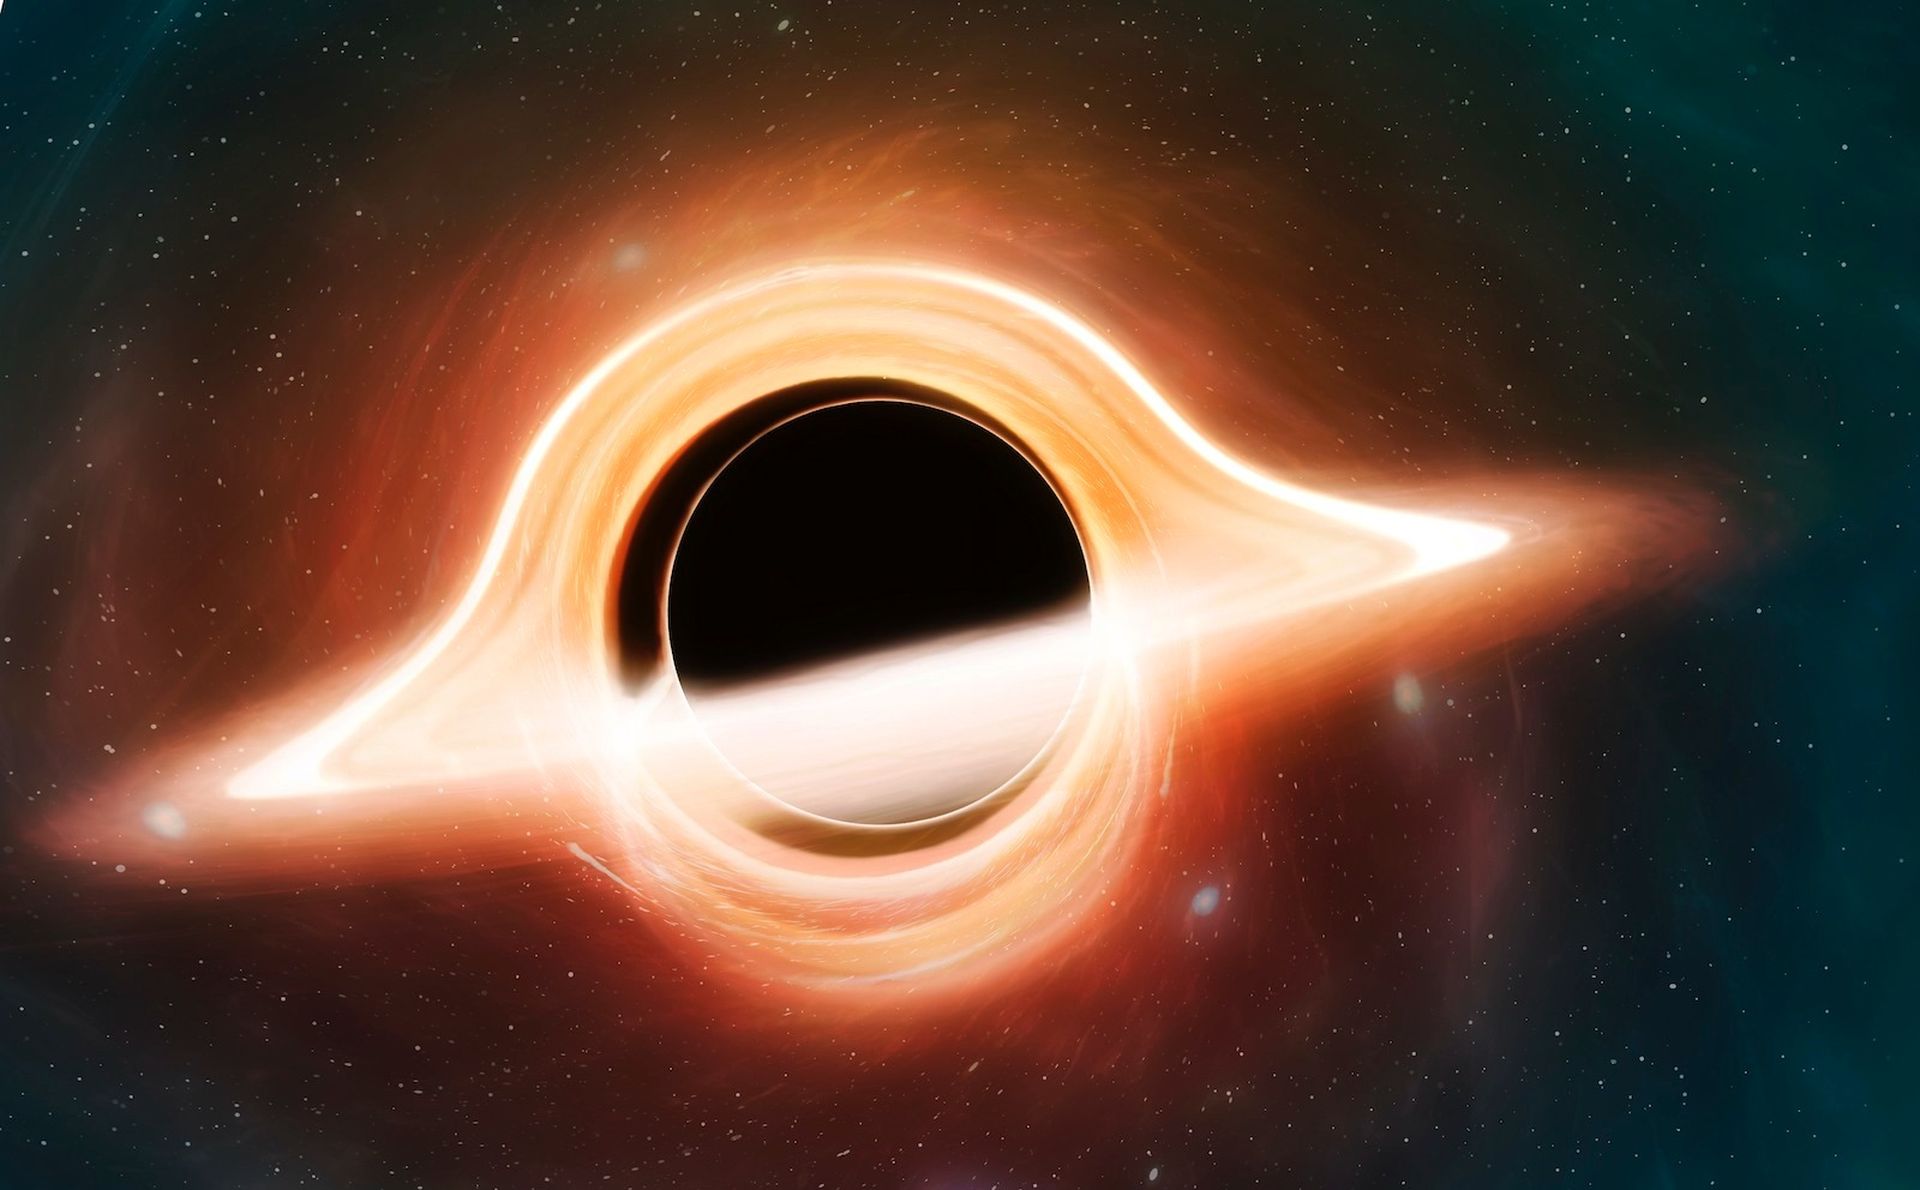 Ученым удалось сфотографировать Стрелец А*, сверхмассивную черную дыру, которая находится в центре нашей галактики Млечный Путь.  Это ошеломляющая черная дыра, в четыре миллиона раз превышающая массу нашего Солнца.